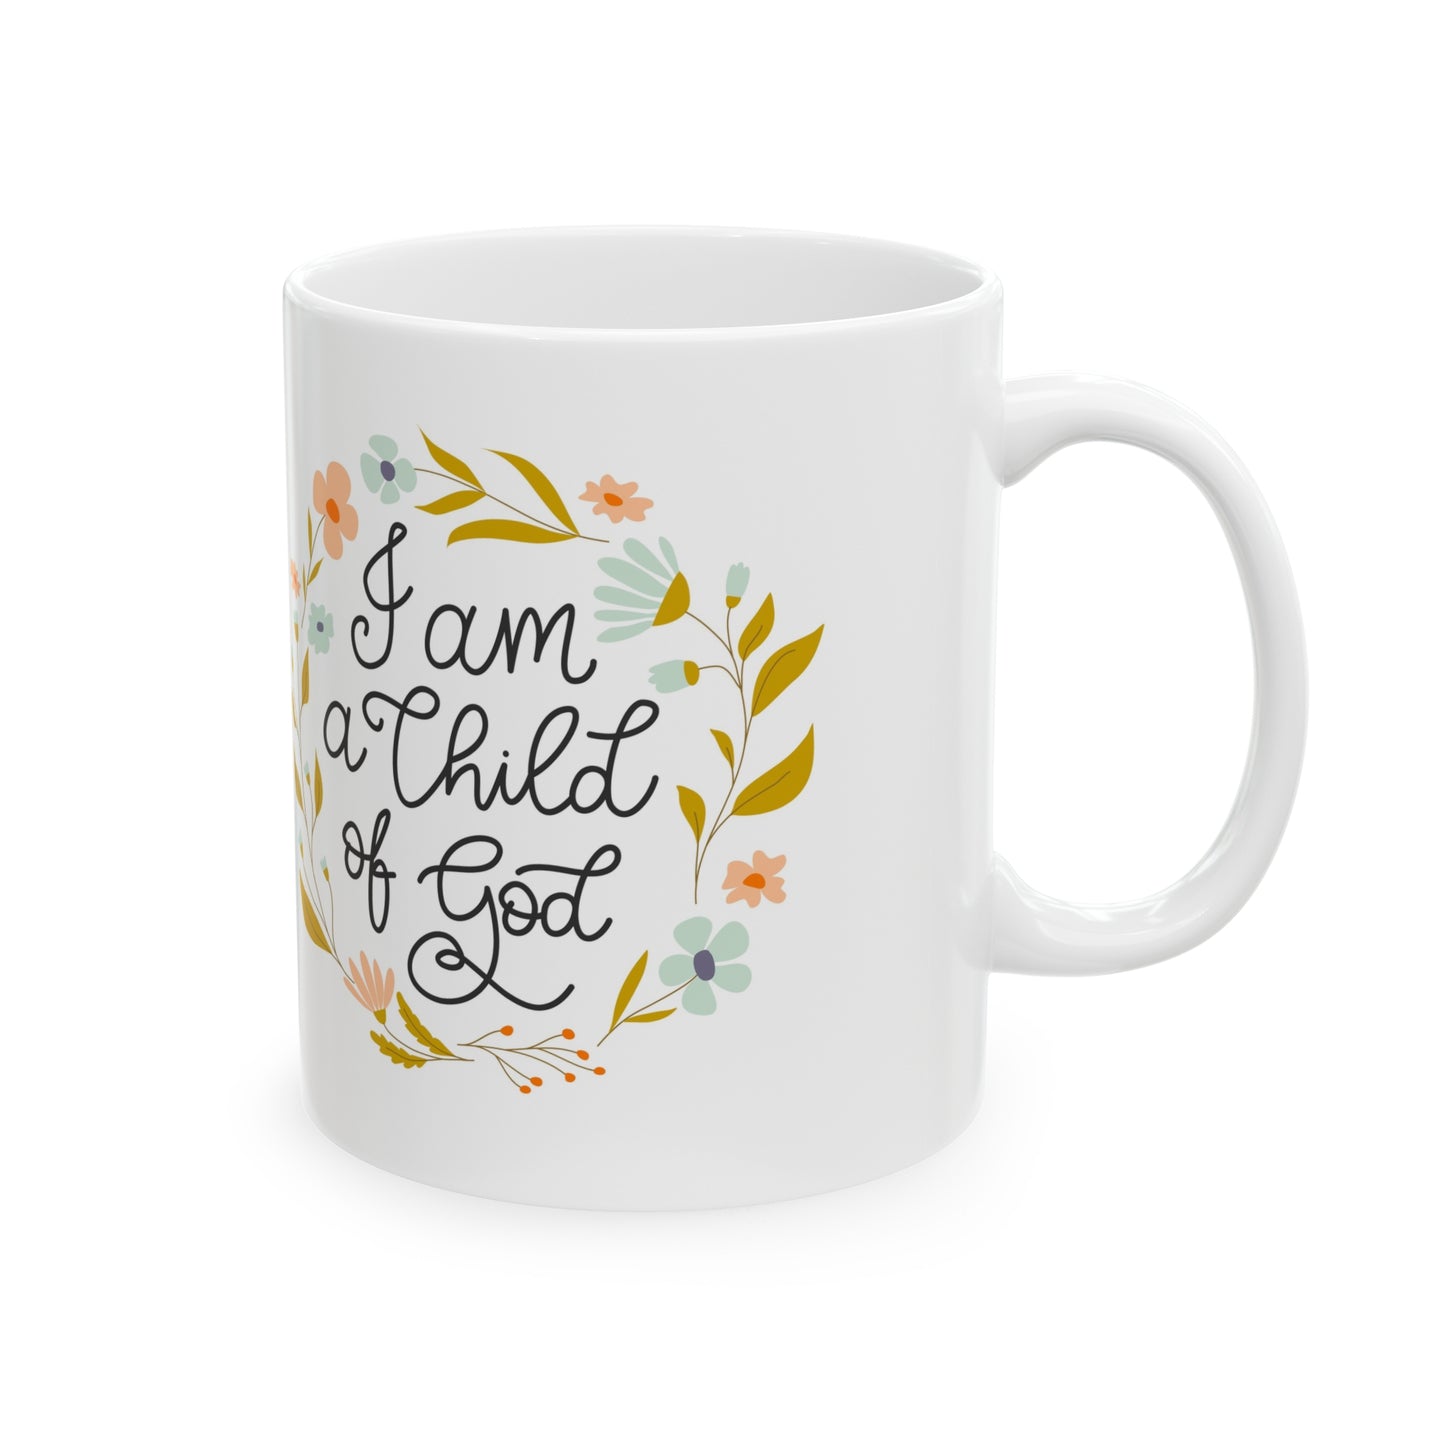 "I Am A Child Of God" Ceramic Mug, 11oz